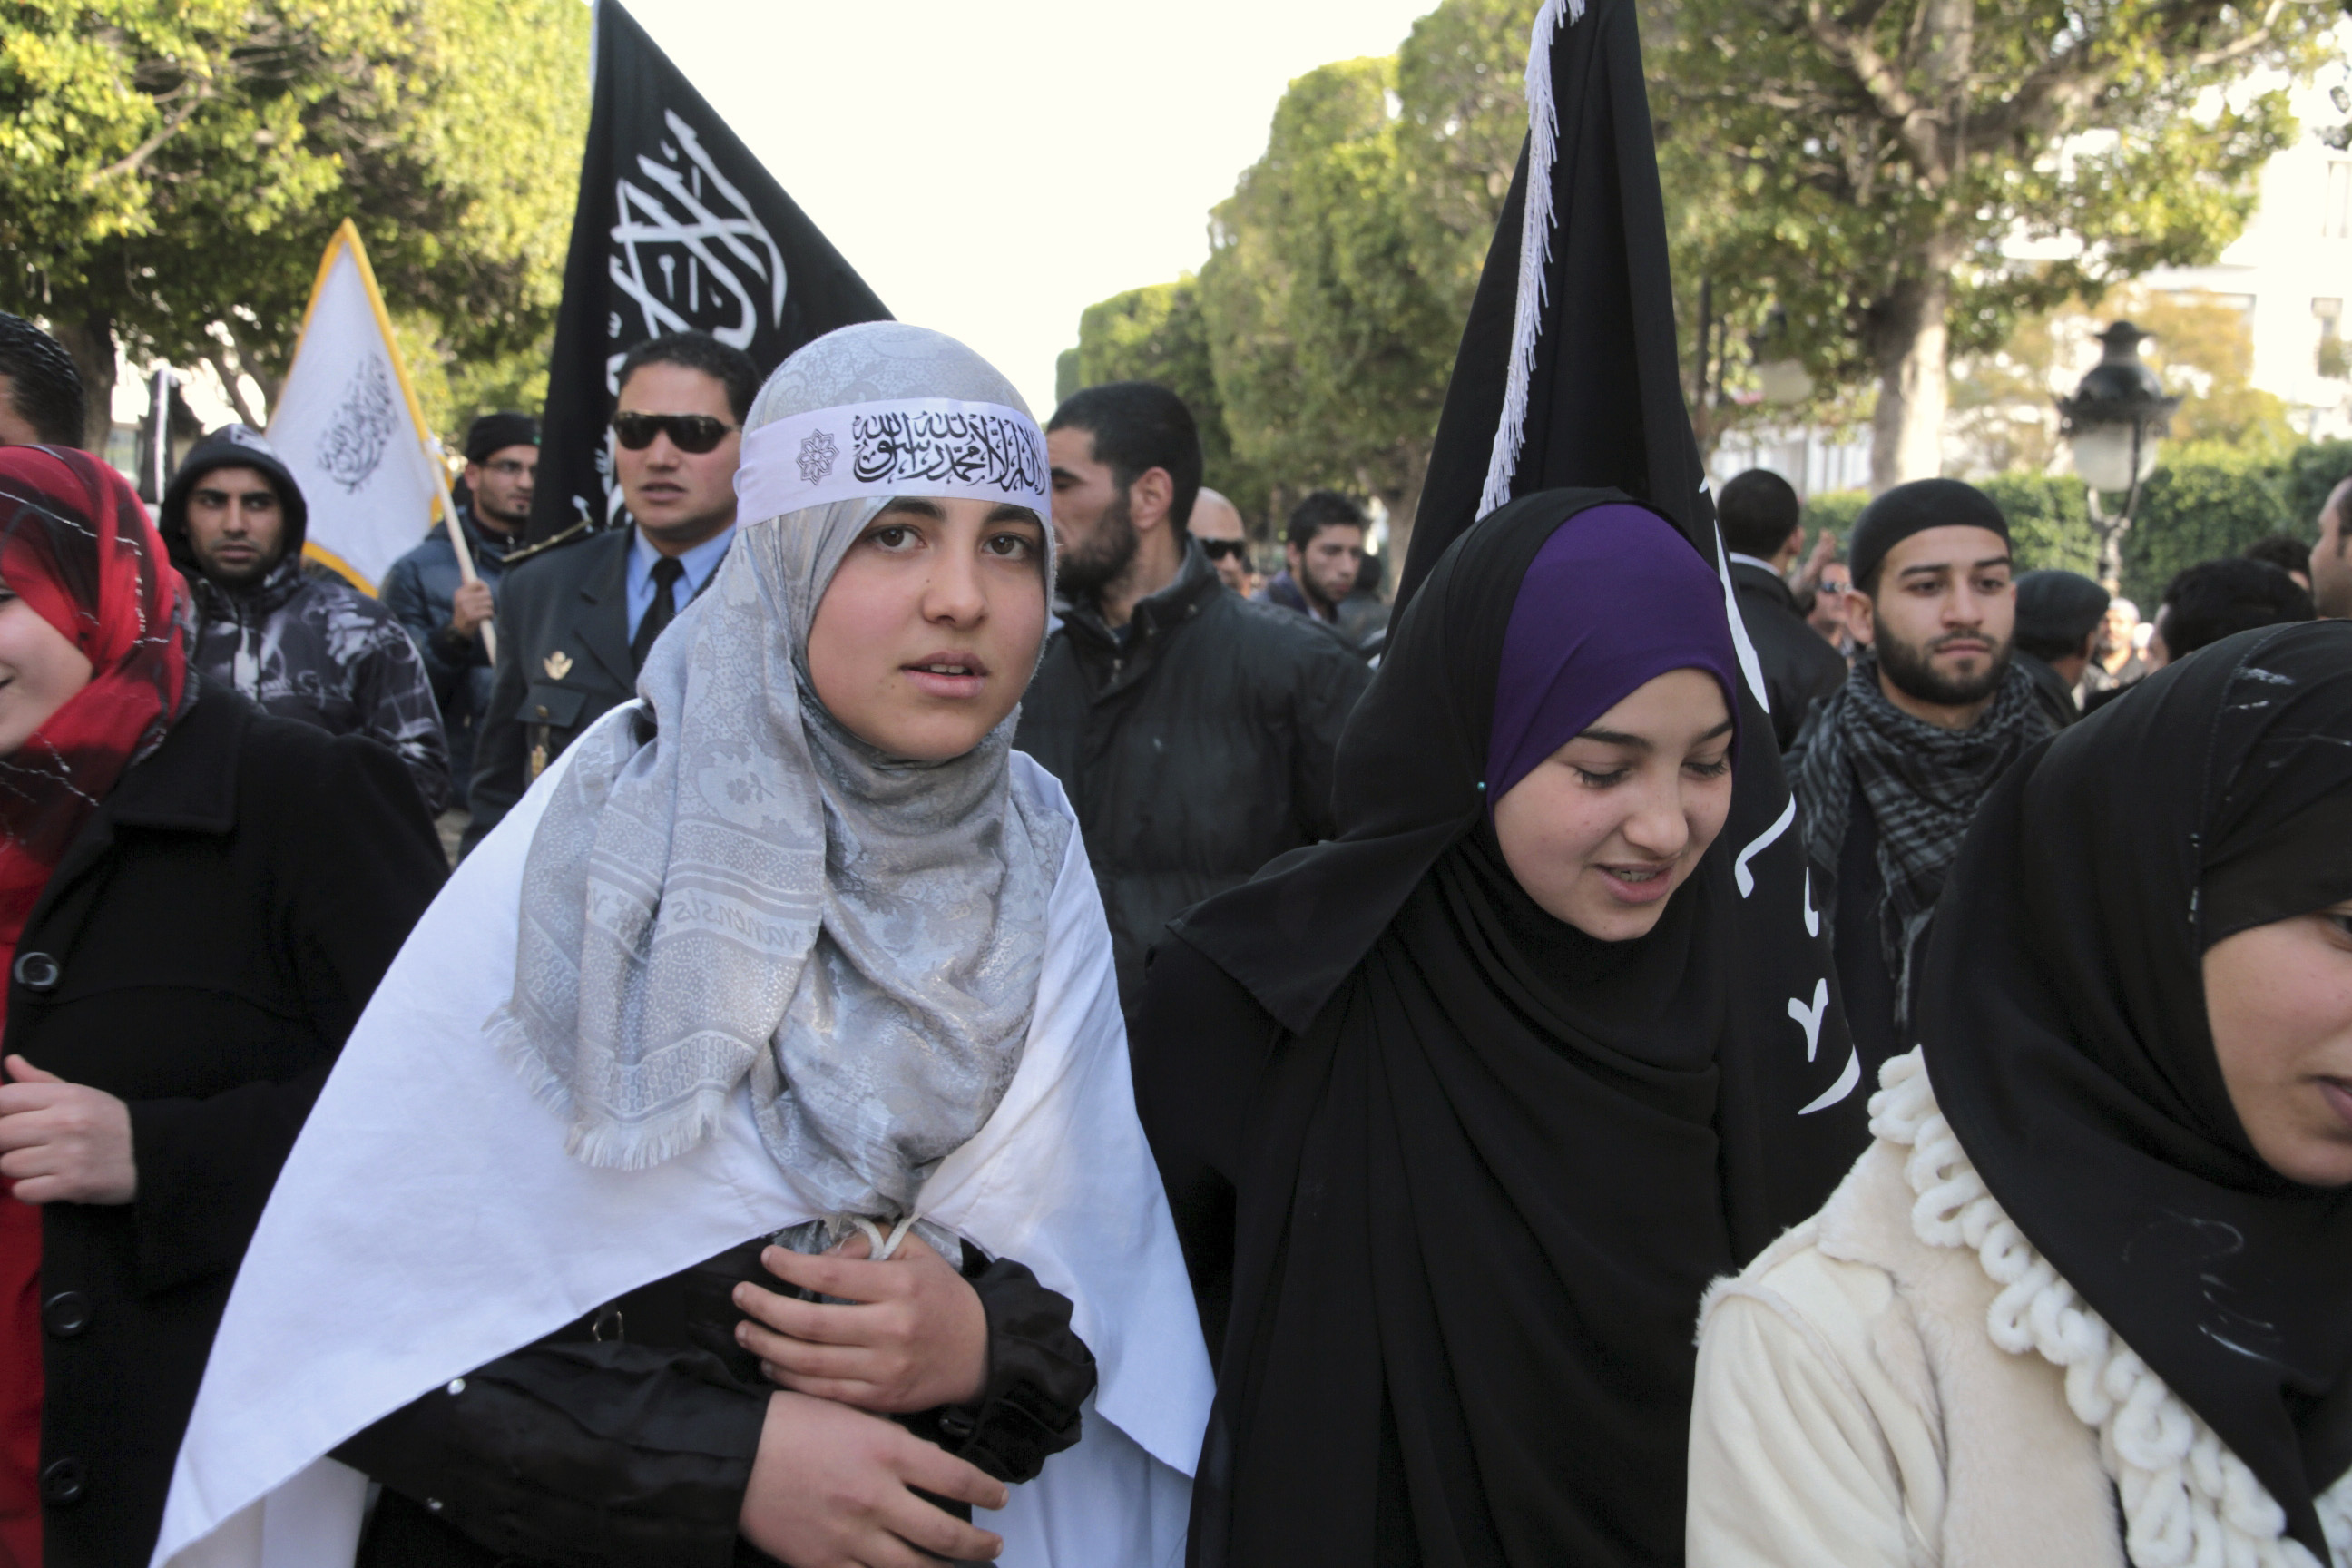 Islam, Sharia, Tunisien, Förslag, Oro, Politik, Demonstration